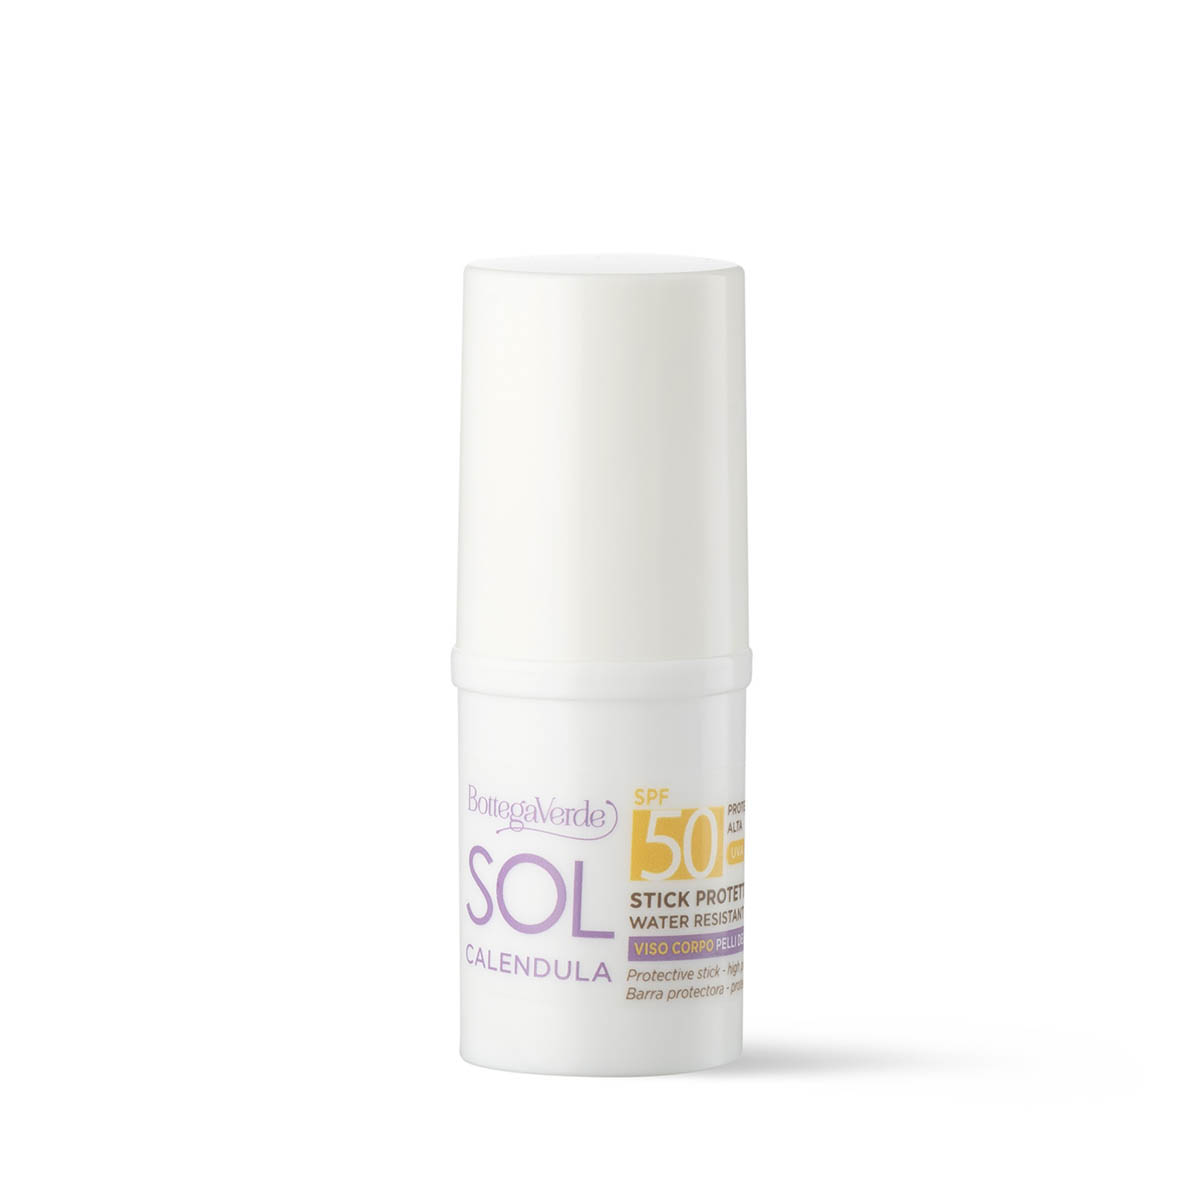 SOL Calendula - Stick protettivo solare - viso corpo - pelli delicate - tutta la famiglia* - con estratto di Calendula di Tenuta Massaini - SPF50 protezione alta- water resistant